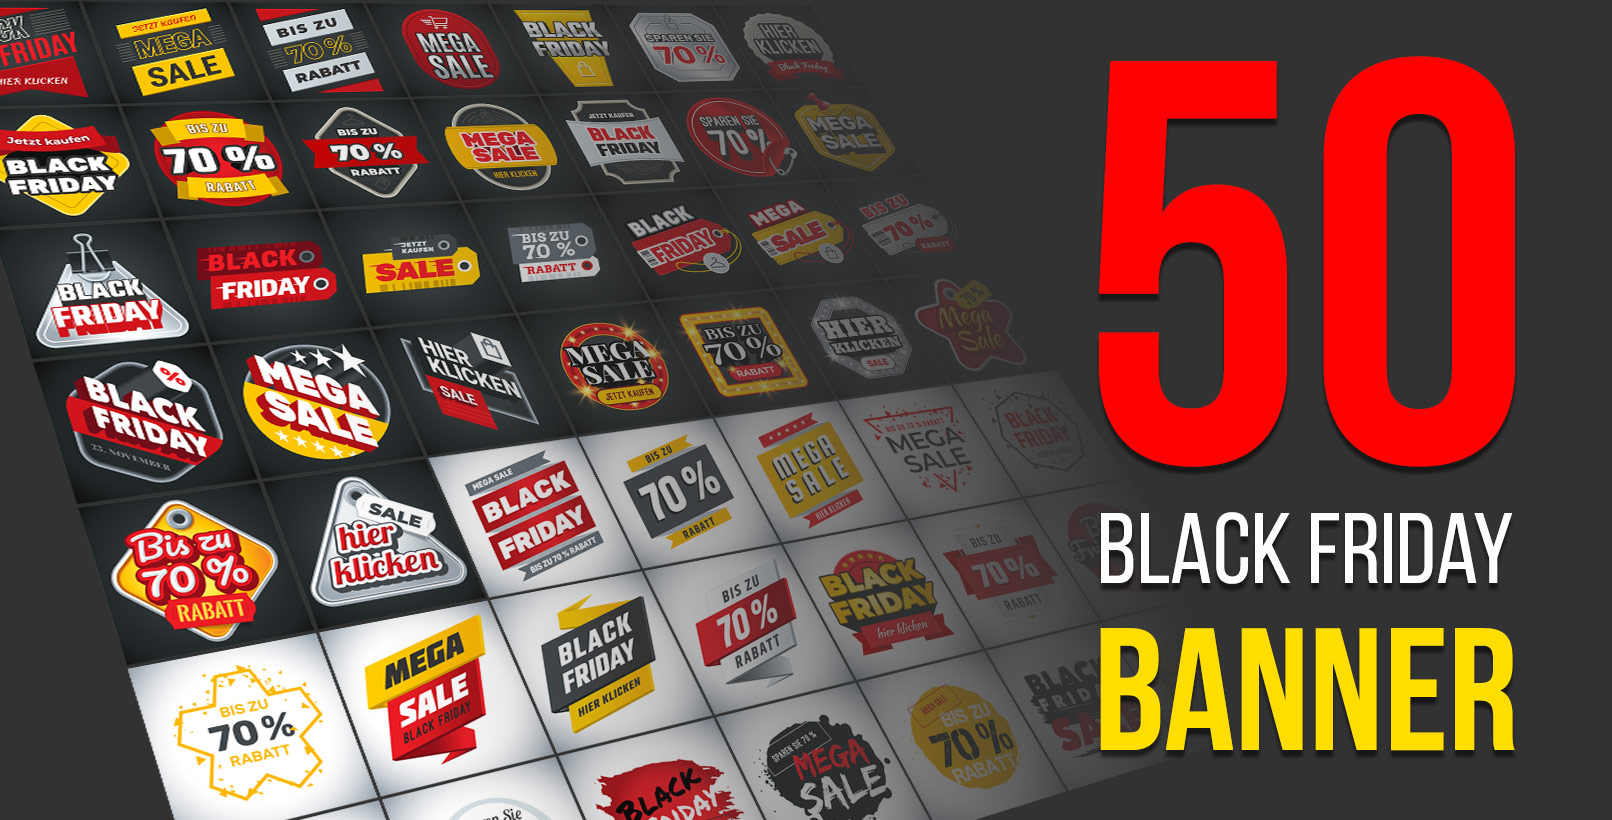 Vorlagen für Banner zur Werbung von Angeboten und Rabatten am Black Friday